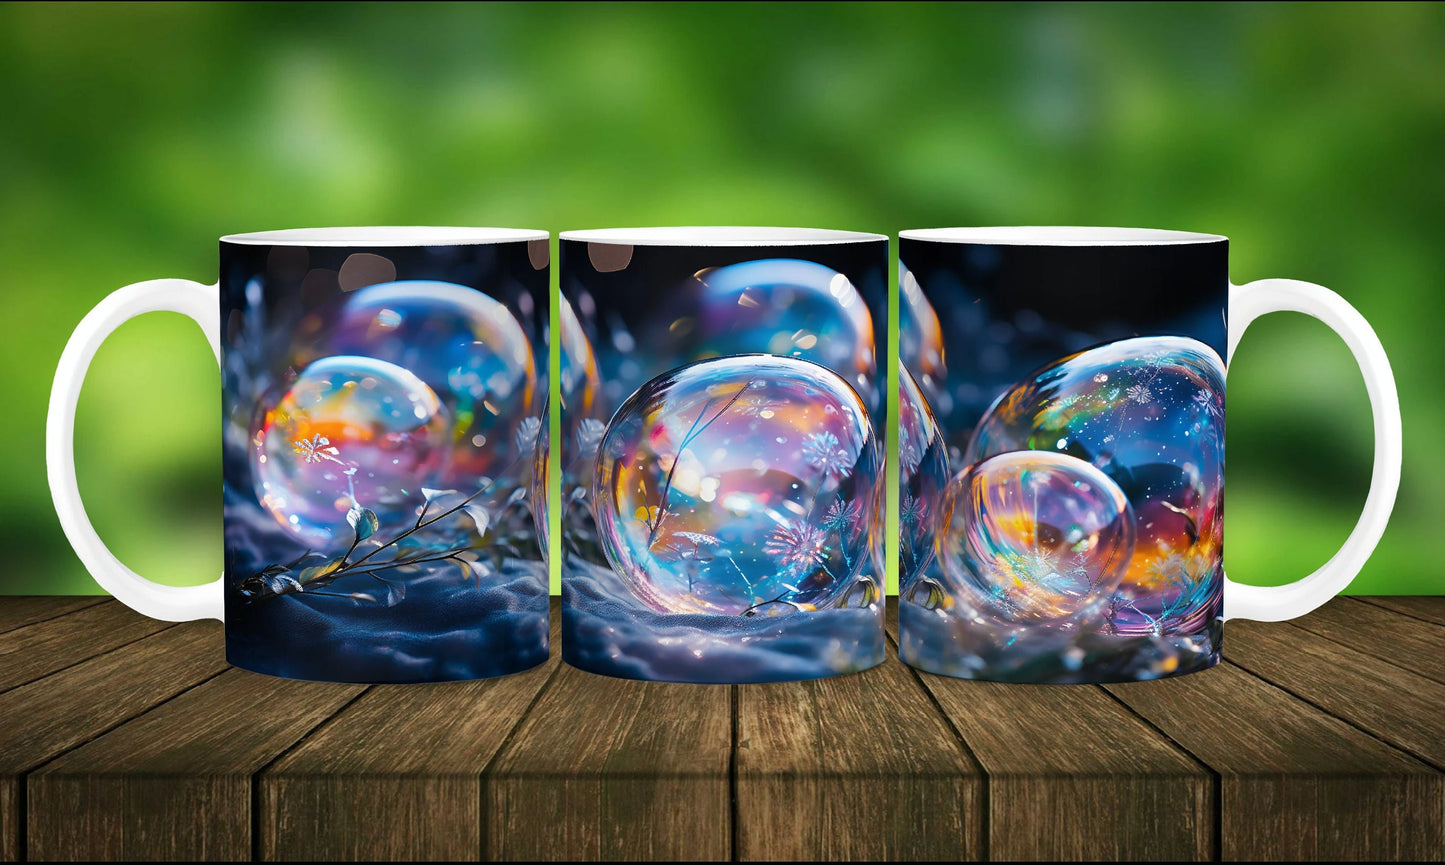 Frozen Bubbles Mug- Ceramic Mug 11oz